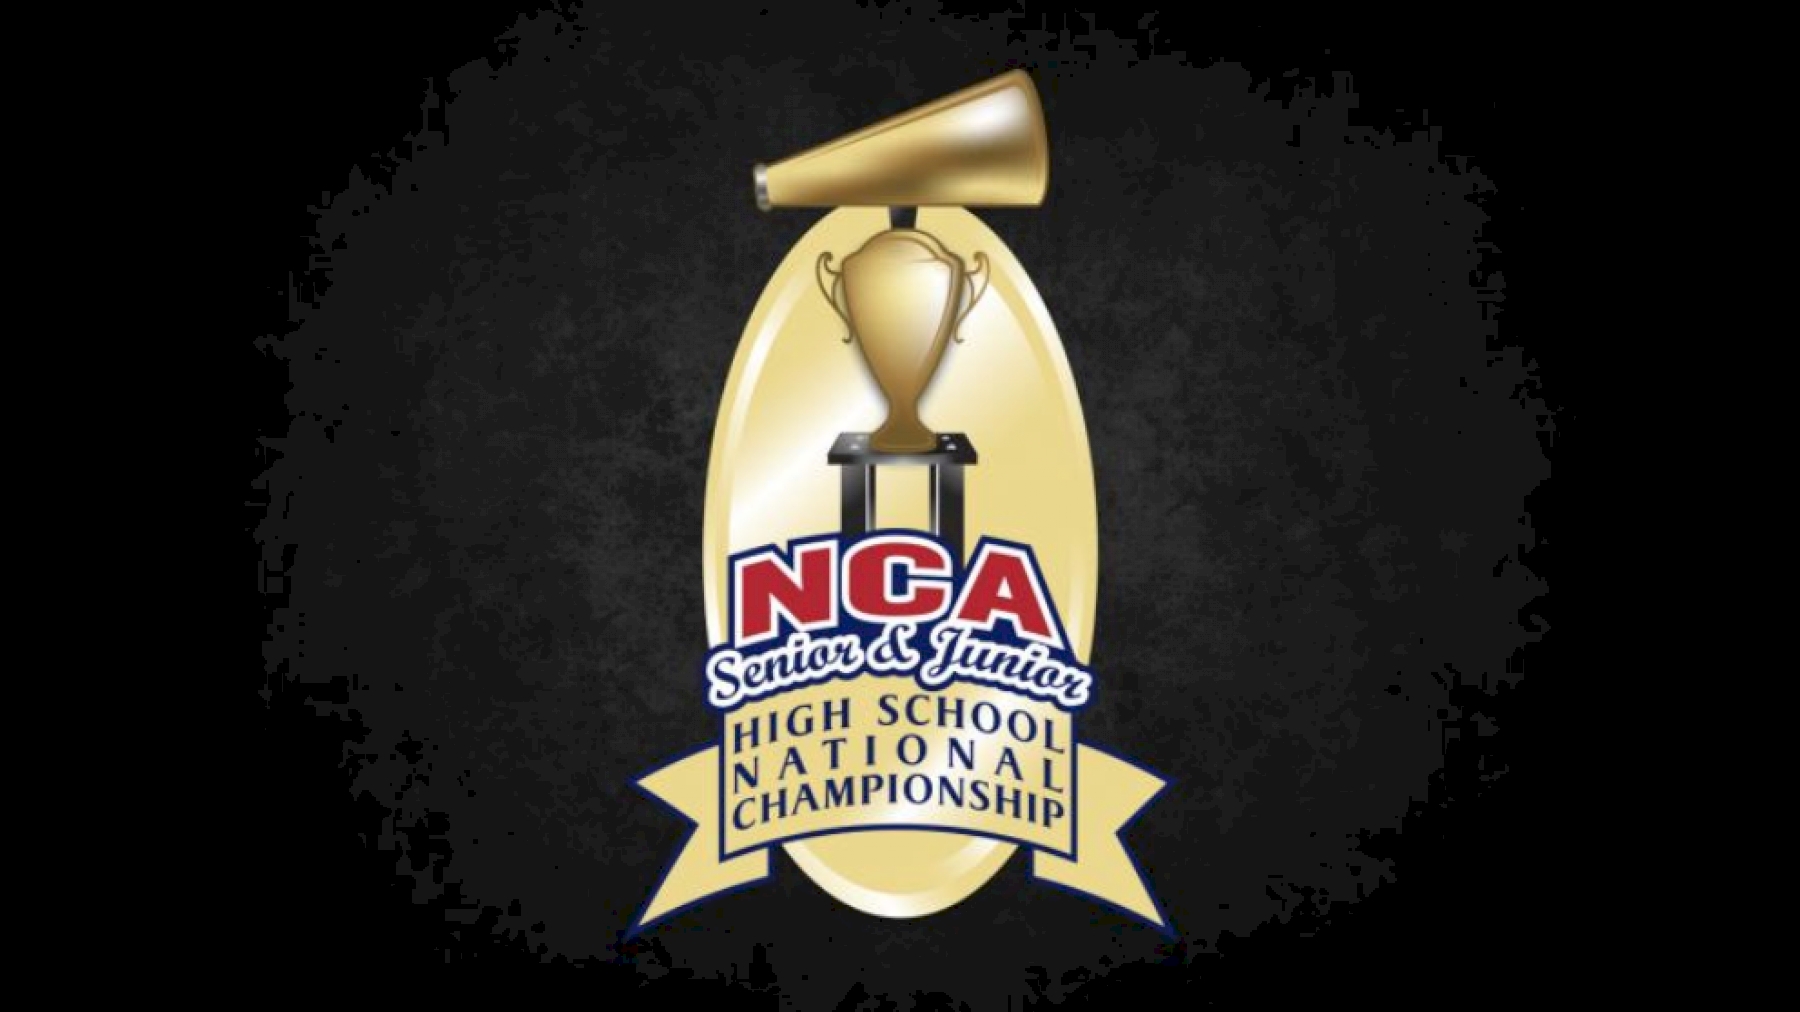 2018 NCA Senior & Junior High School National Championship Varsity TV